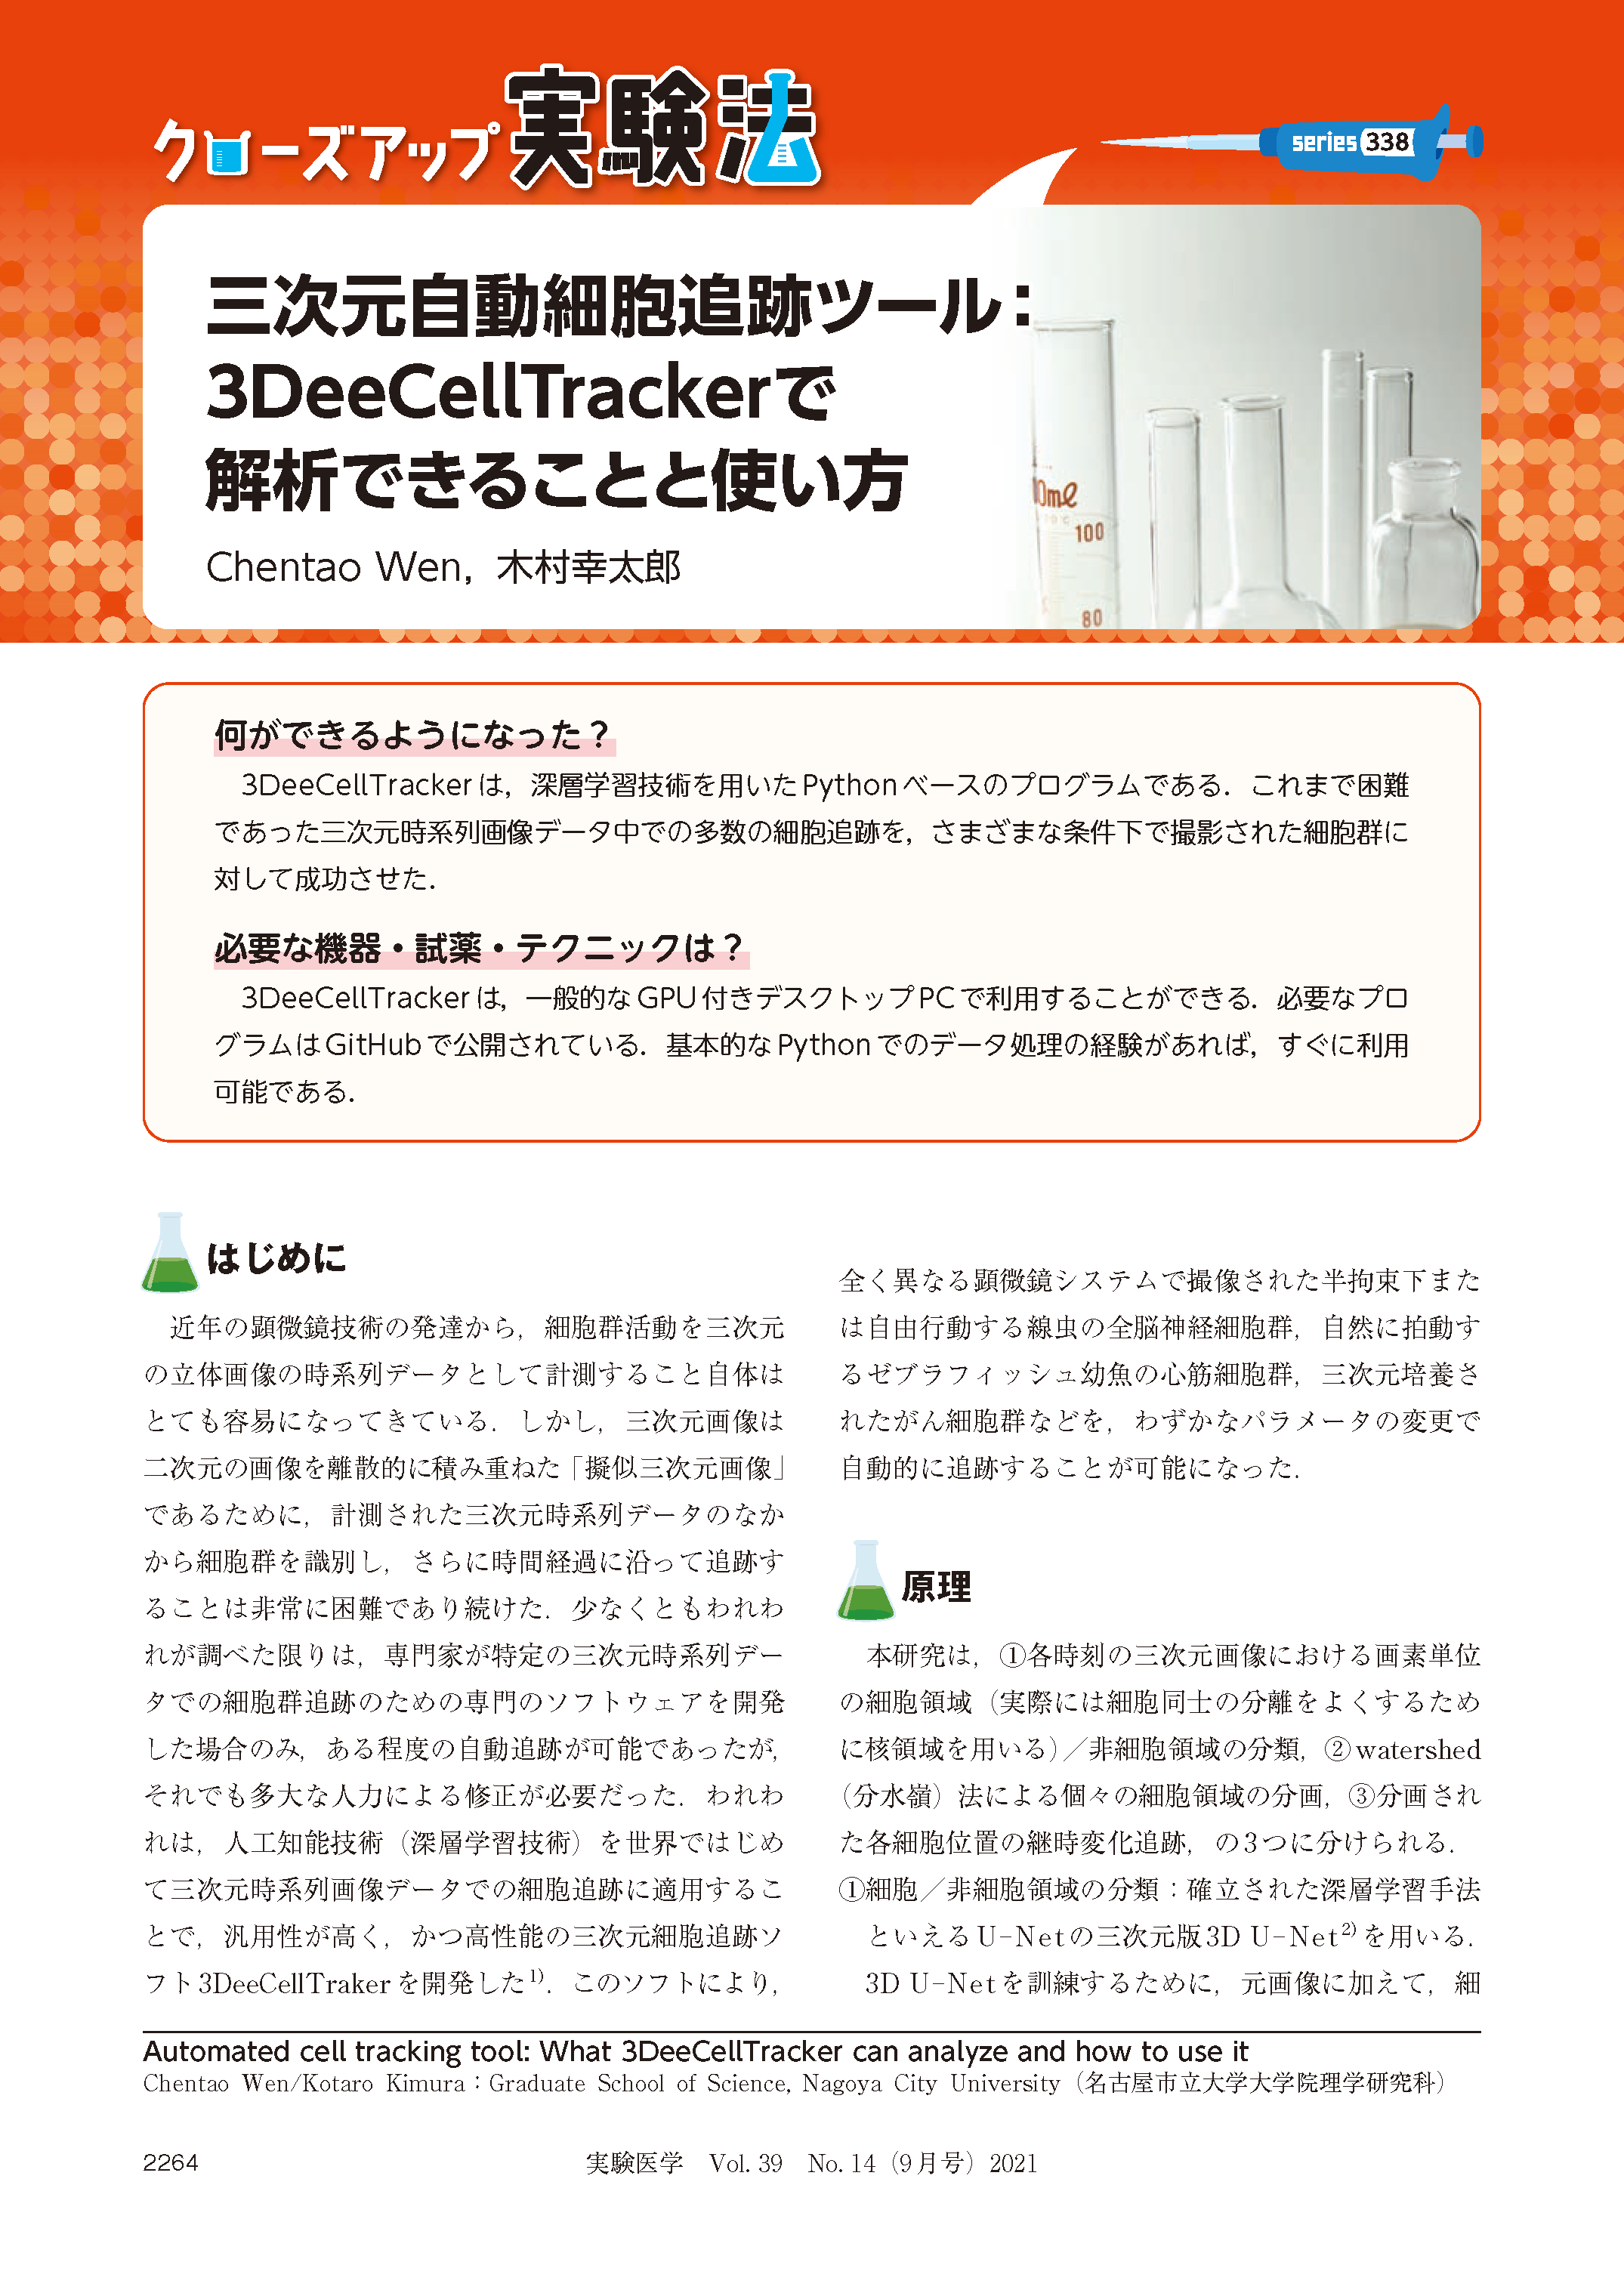 三次元自動細胞追跡ツール：3DeeCellTrackerで解析できることと使い方